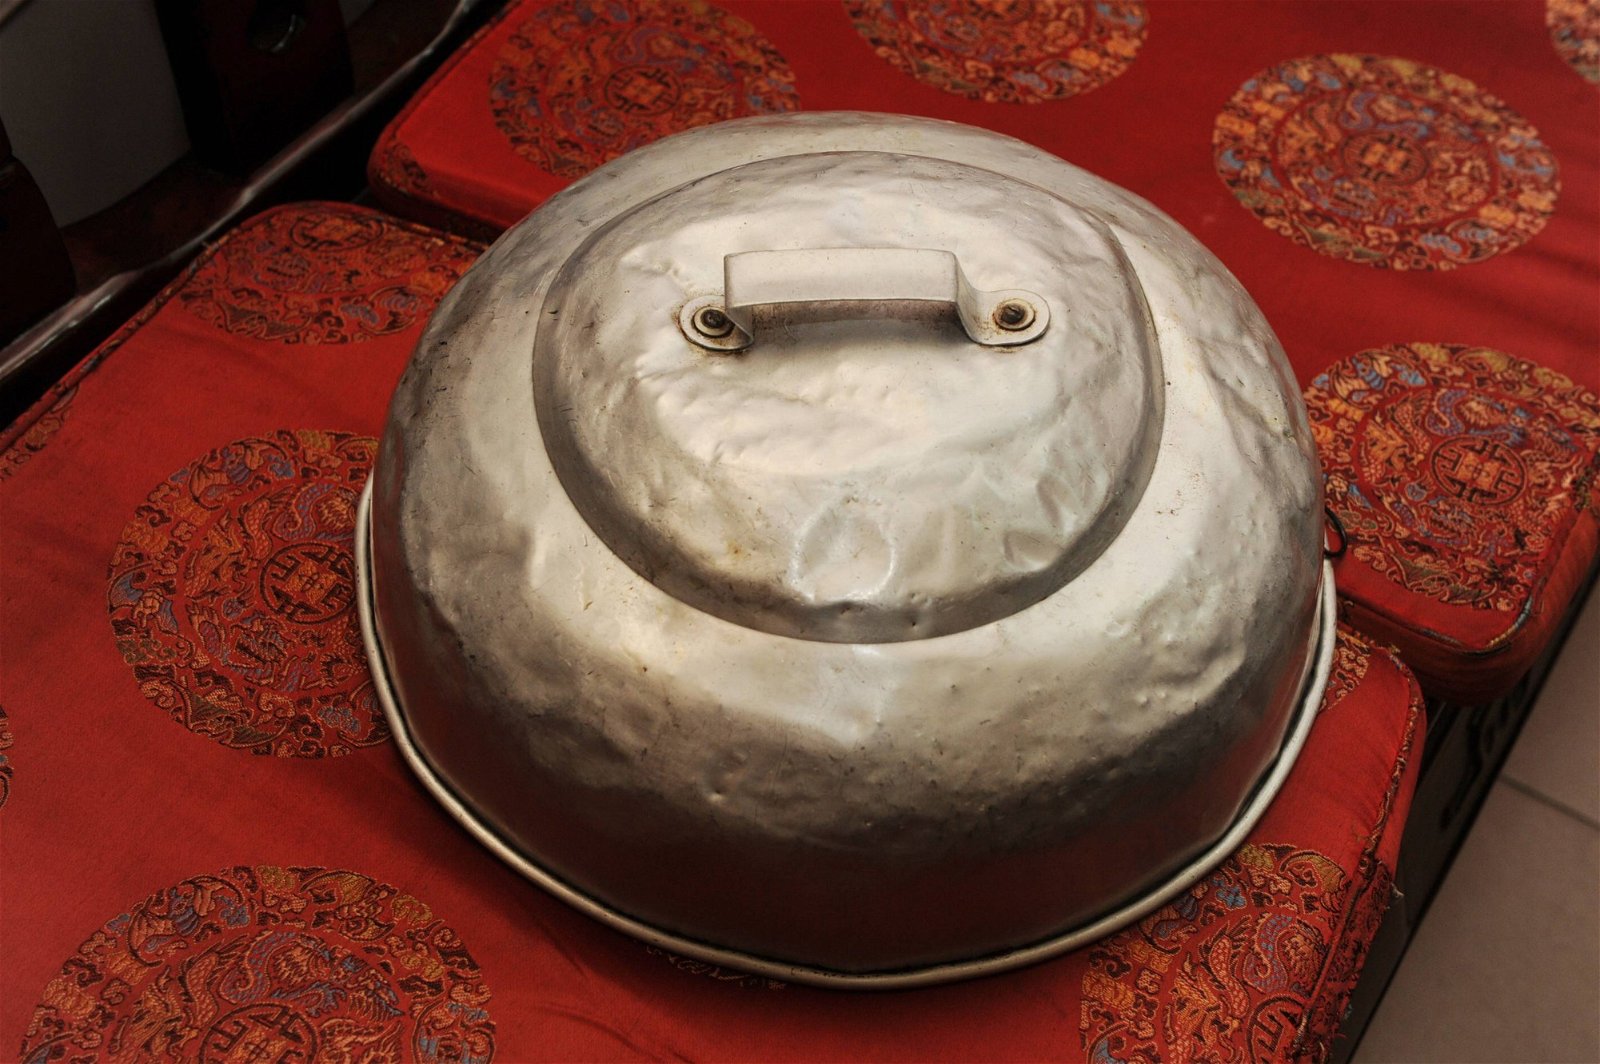 陈黎明使用的锅盖和一般锅盖无异，他谓咒语是治疗中 林珮璇 最重要的一环。